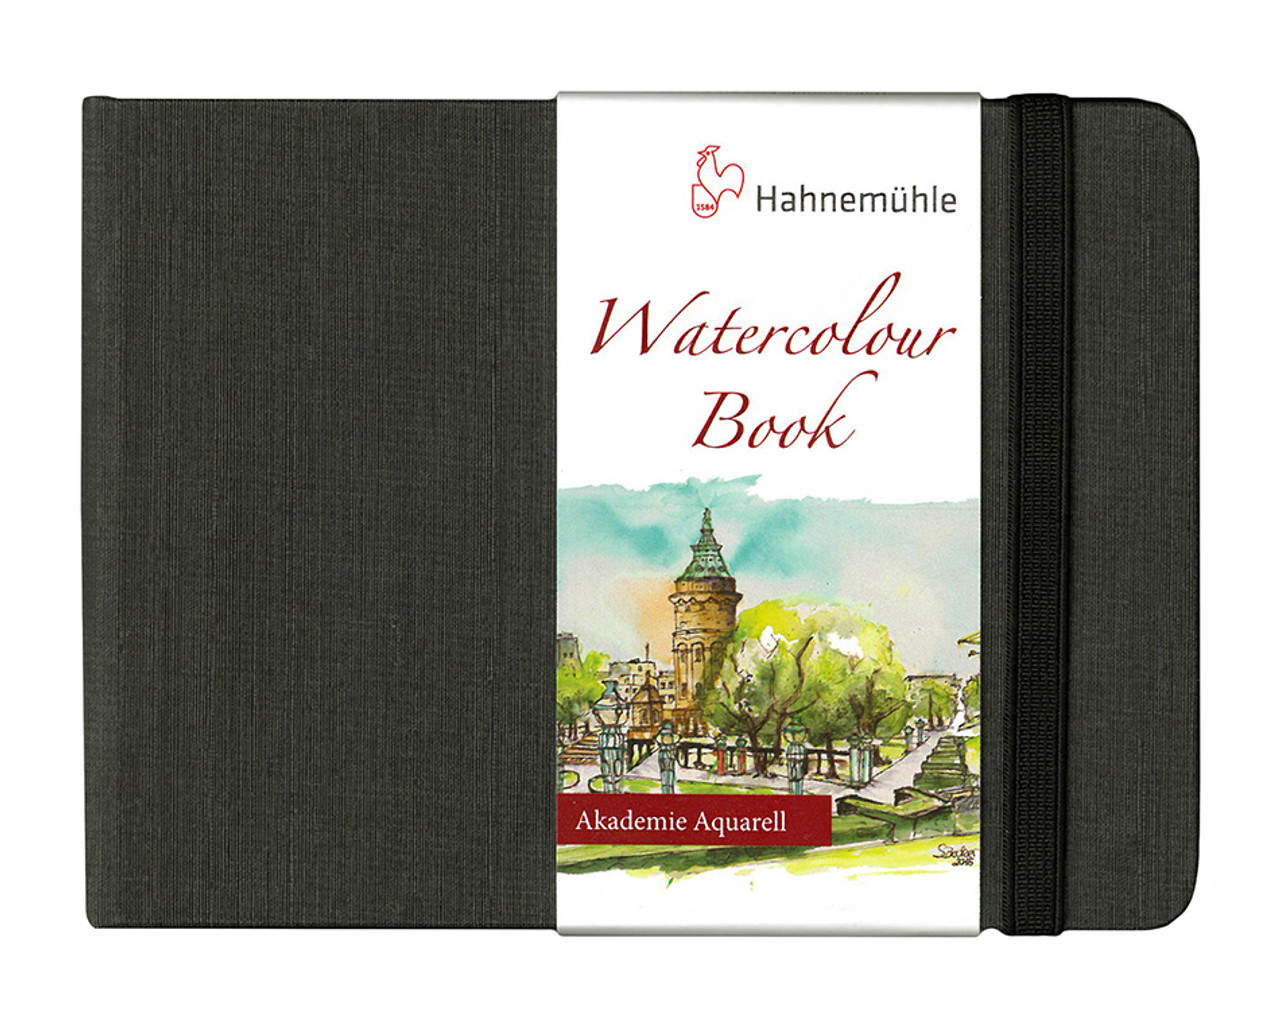 Hahnemühle Watercolor Book - 5.8 x 4.1, A6, 60 Pages, Landscape